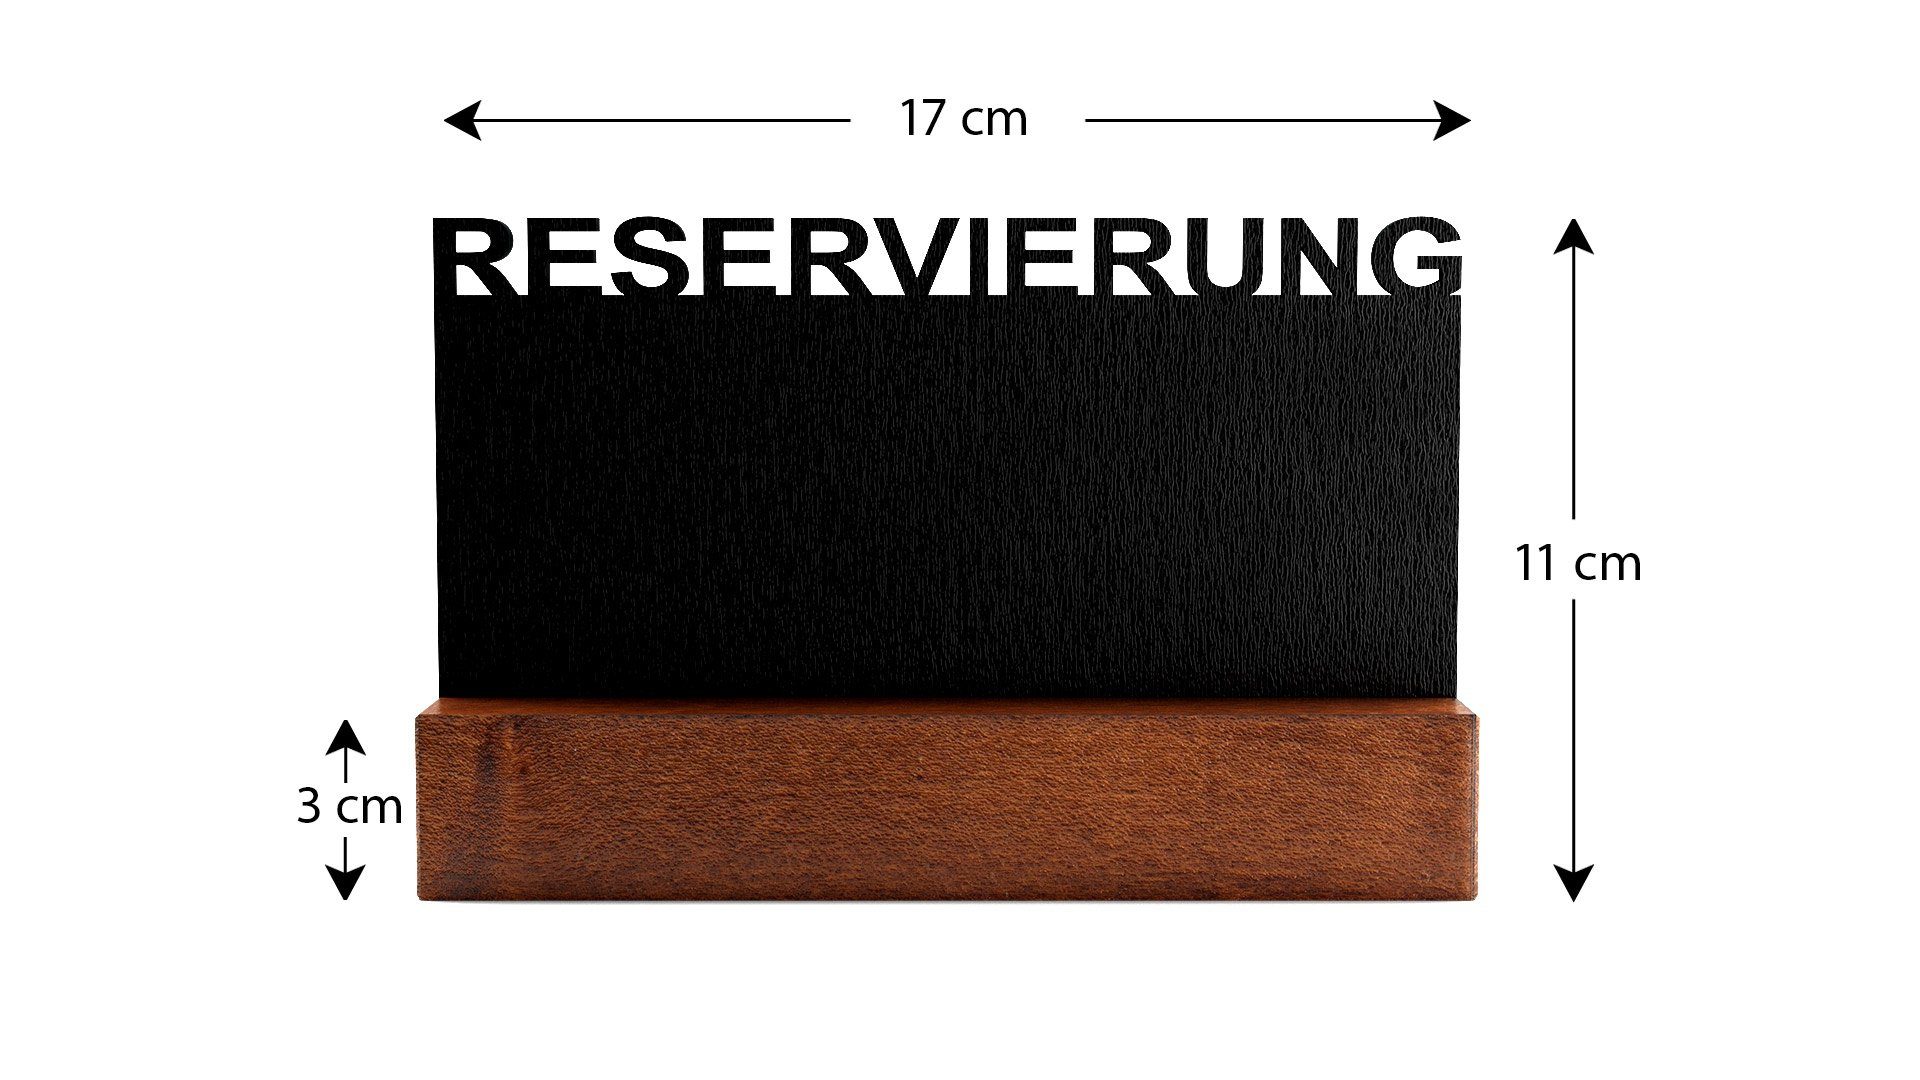 Kreide Memoboard Mini Tischaufsteller Reservirung ALLboards Tafeln Kleine doppelseitige